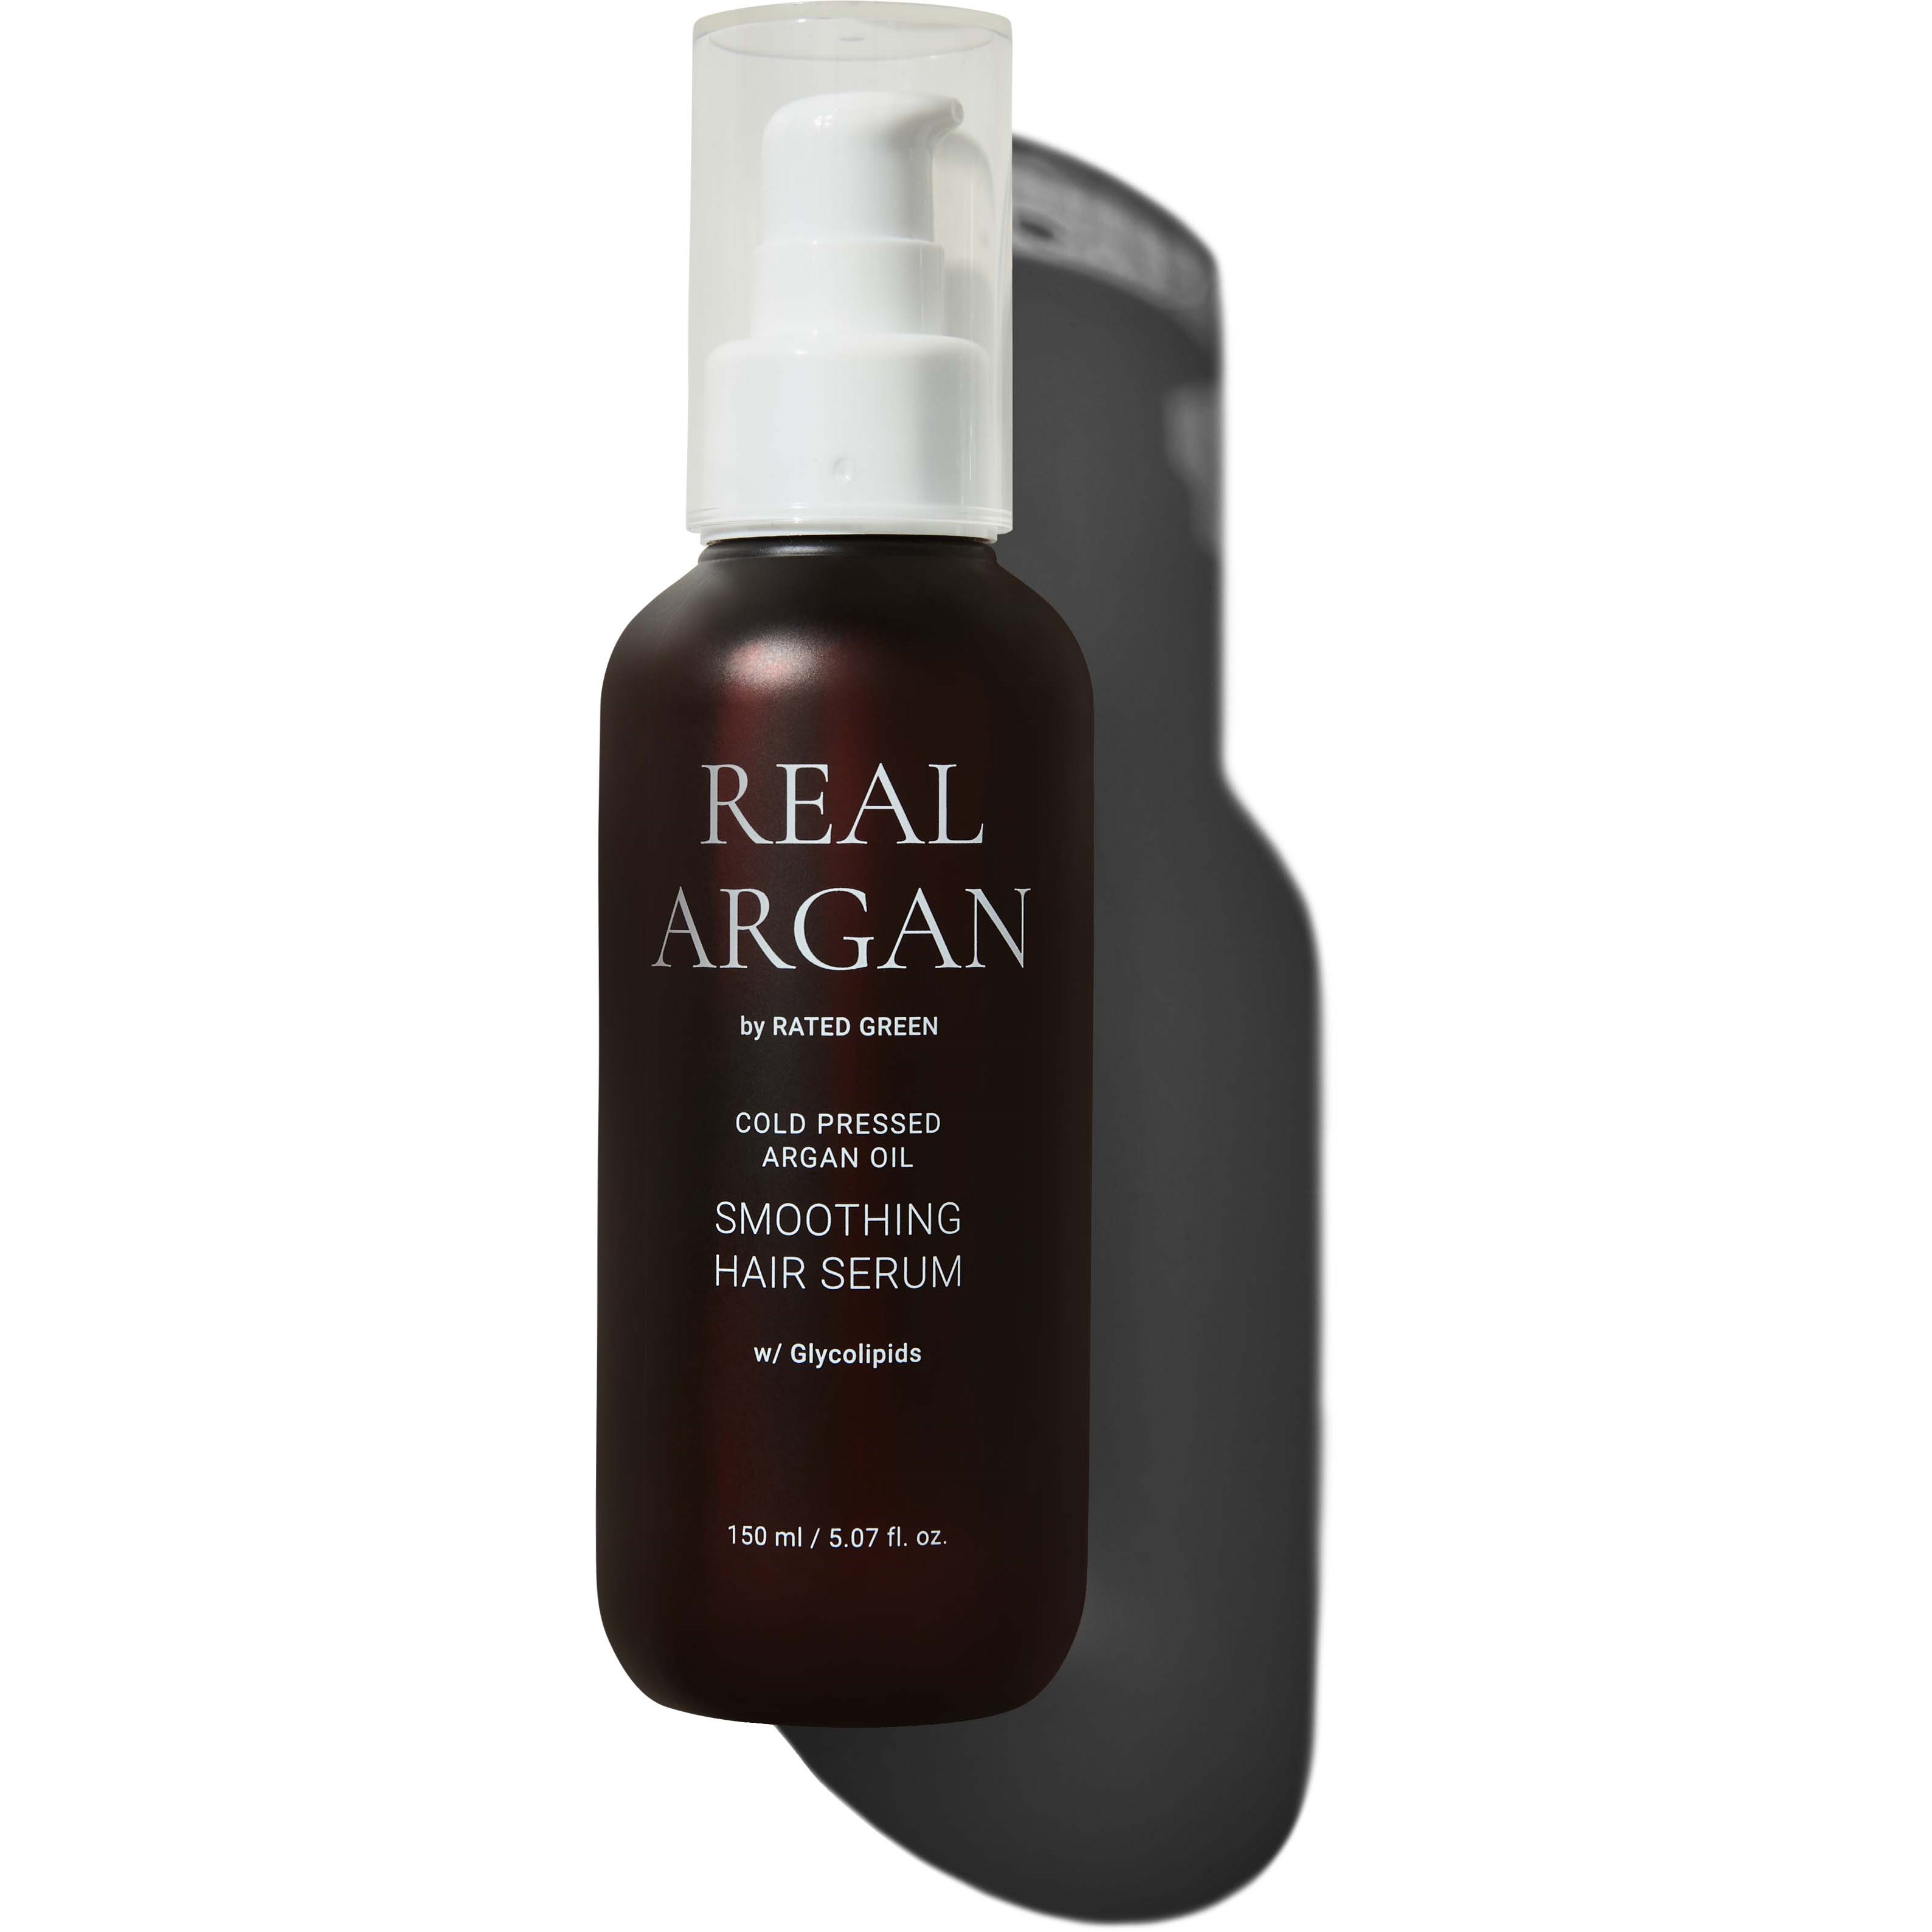 Bilde av Rated Green Real Argan Cold Pressed Argan Oil Smoothing Hair Serum 150